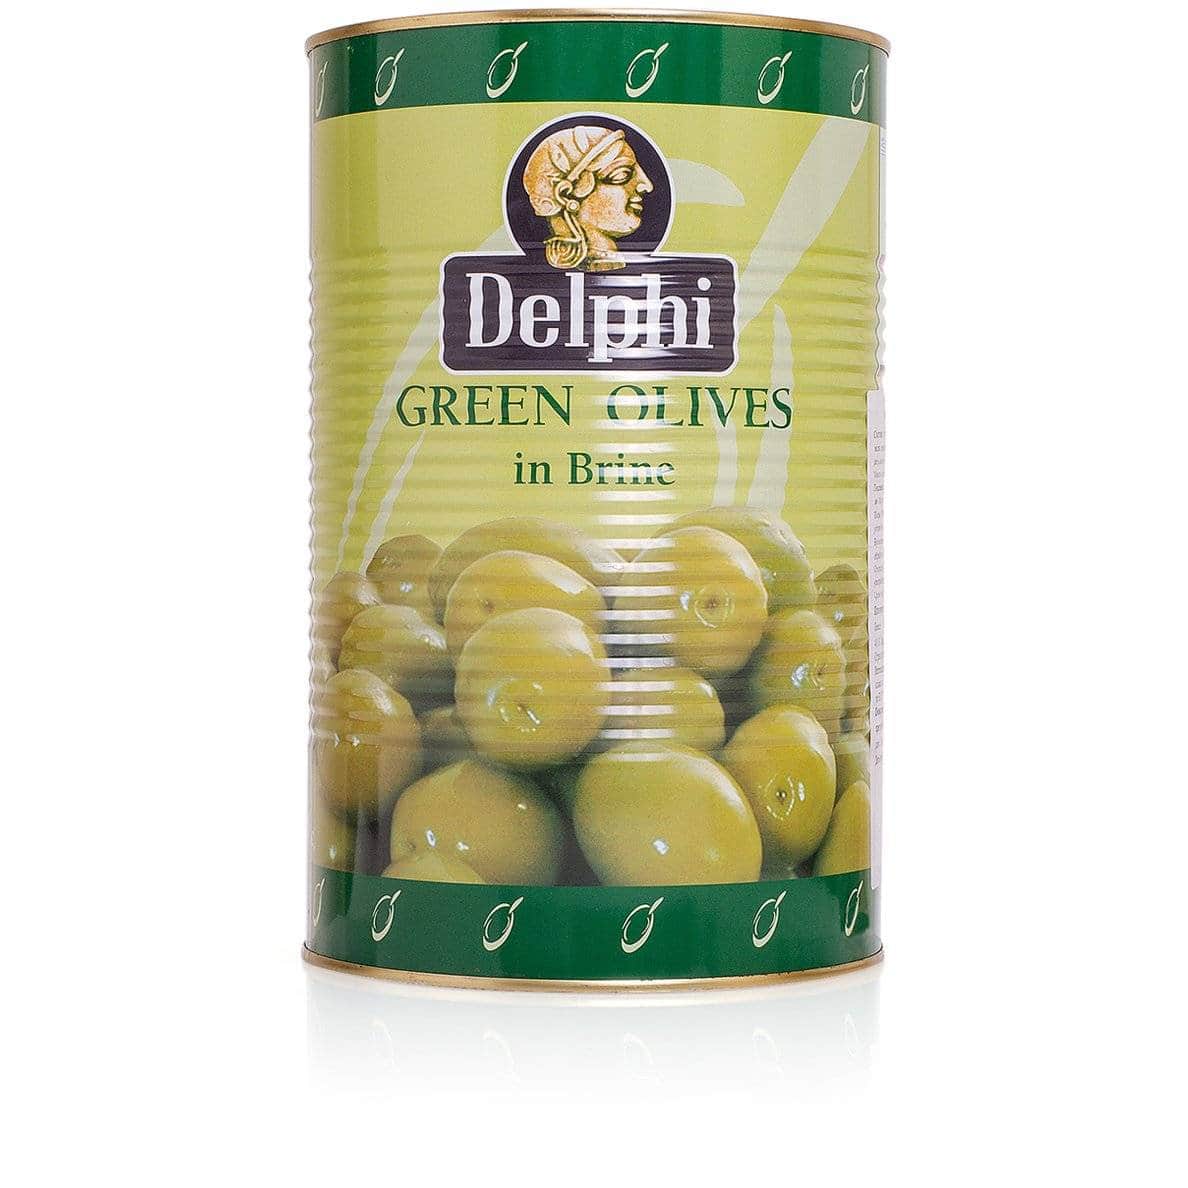 Оливки с косточкой в рассоле DELPHI Colossal 121-140 4250г